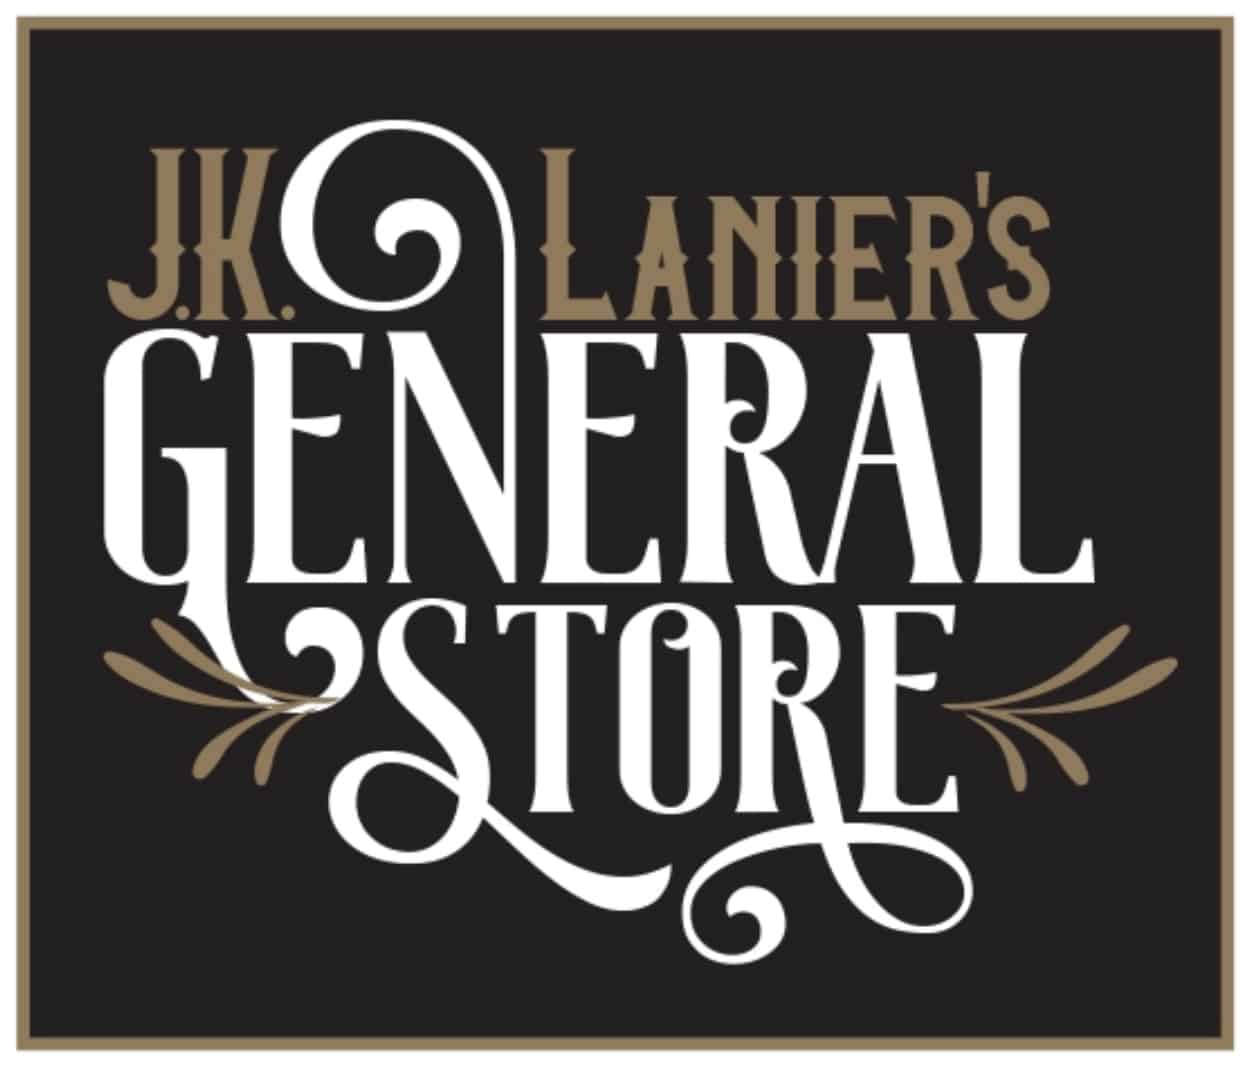 JK Lanier’s General Store